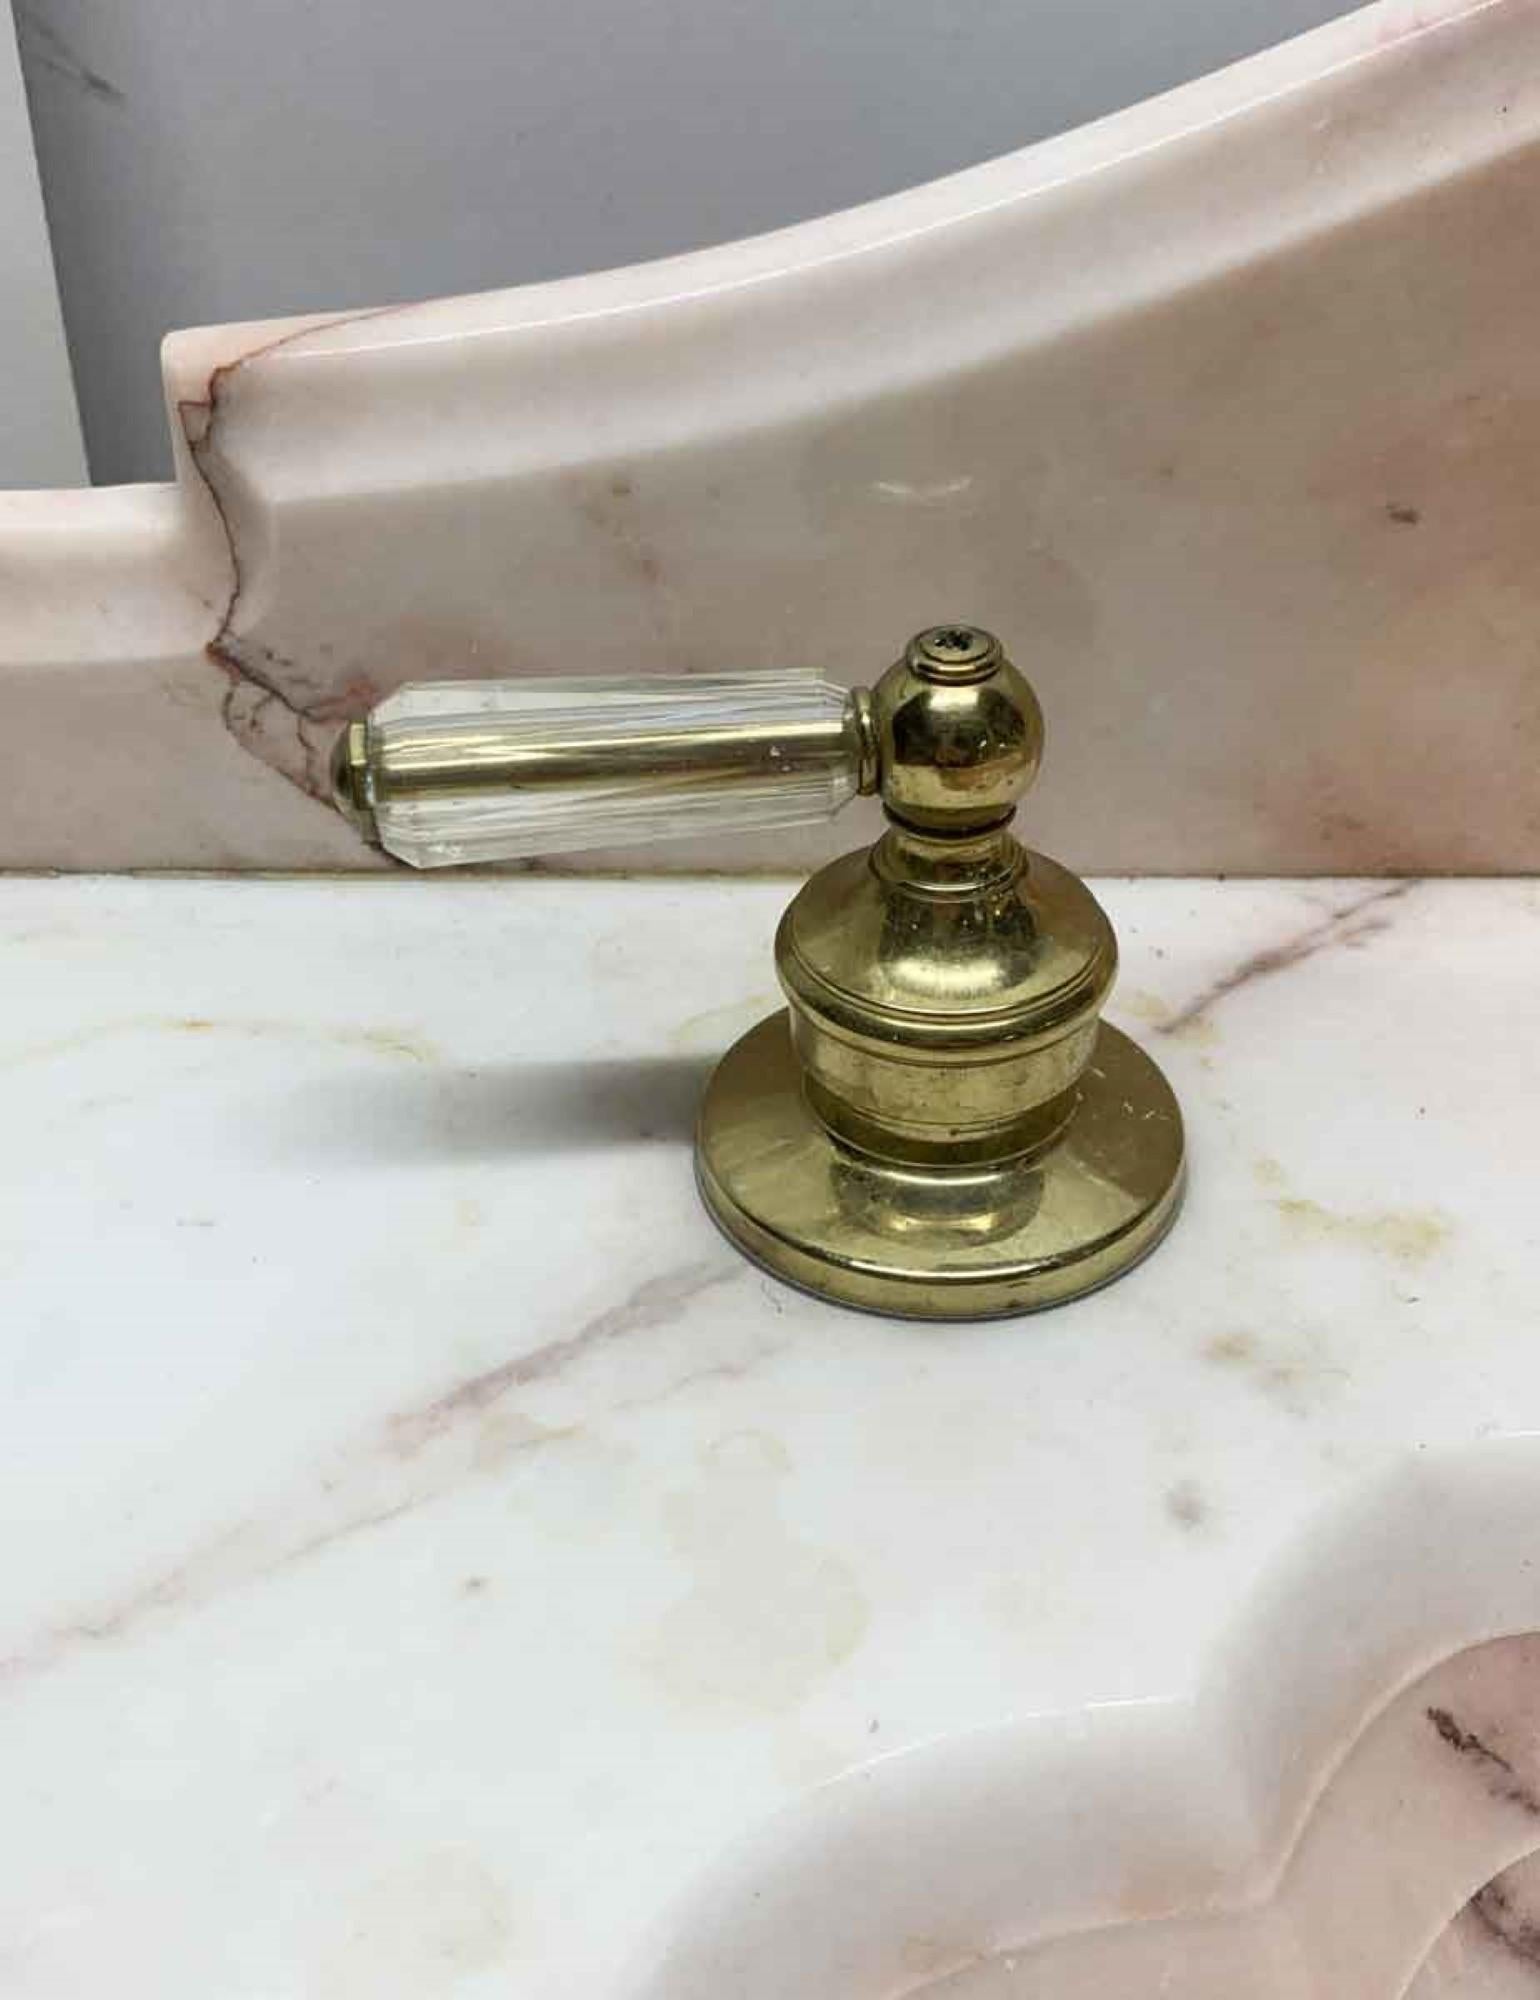 marble pedestal sinks